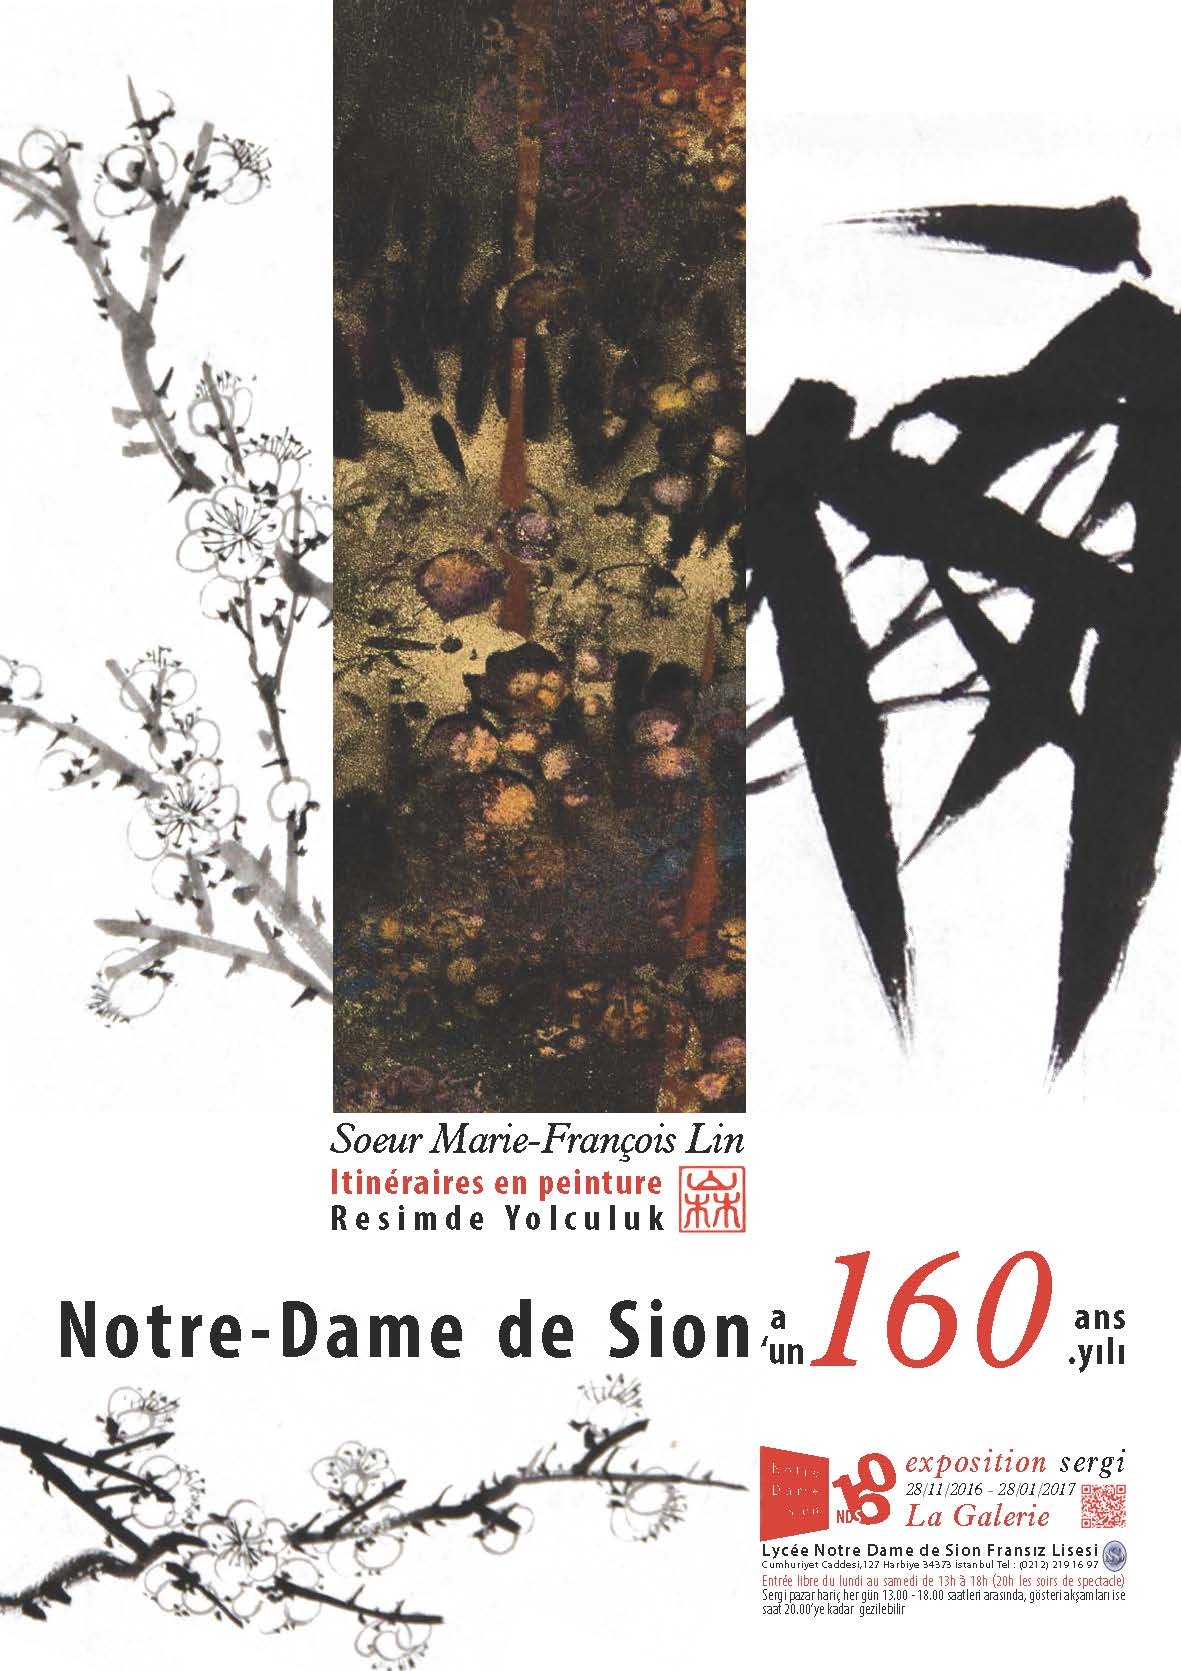 NDS’in 160. yıldönümü nedeniyle okulumuzda Sr Marie François Lin’in resim sergisi…